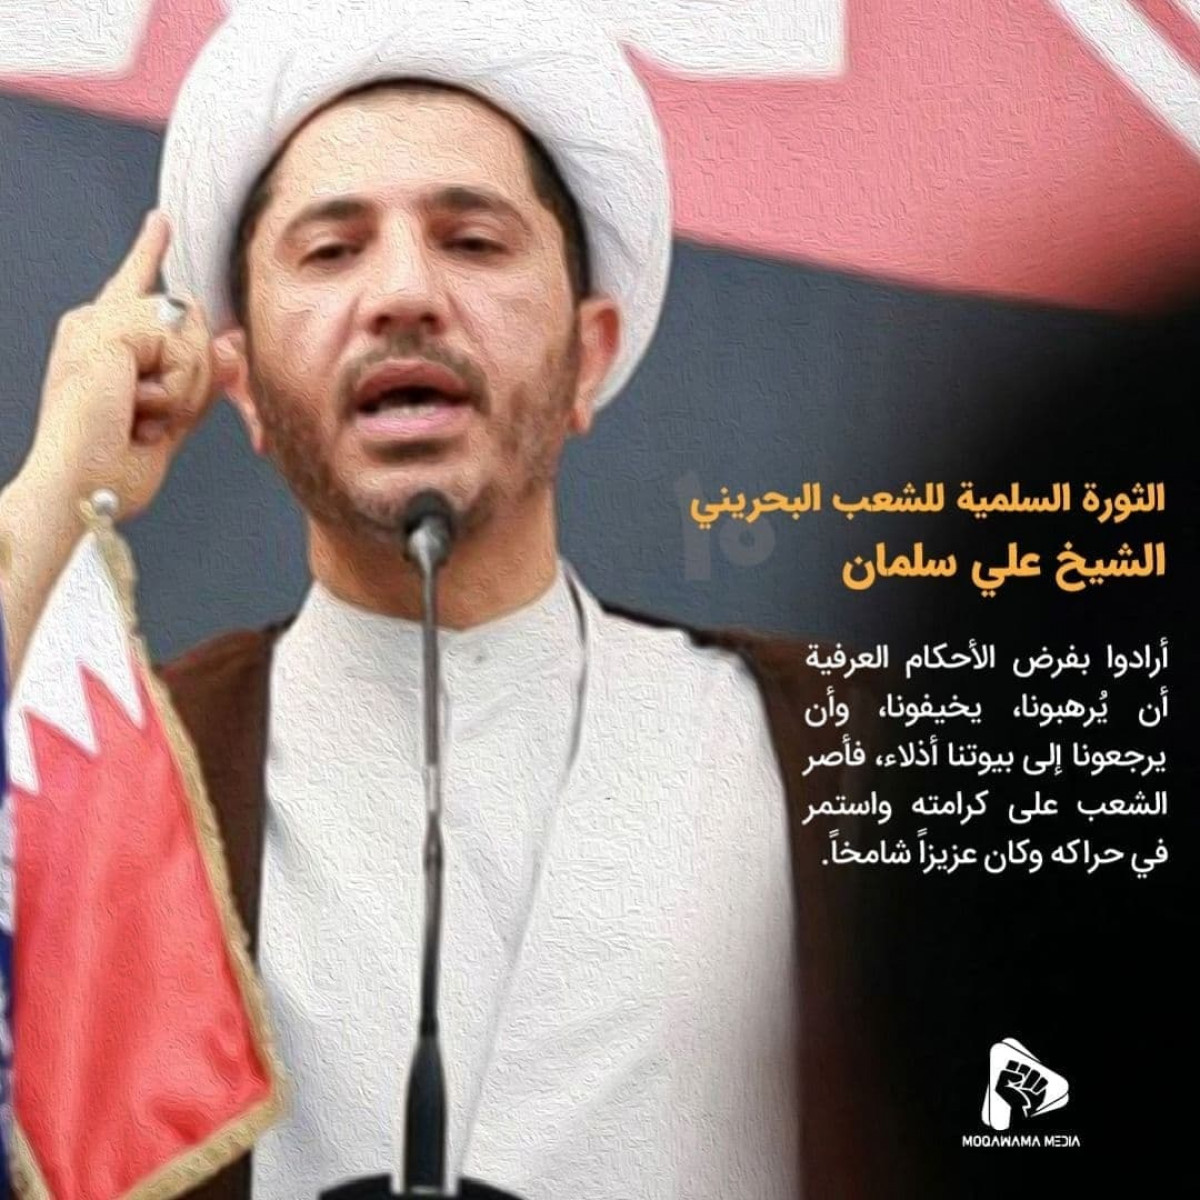 الثورة السلمية للشعب البحريني / الشیخ علي سلمان 2